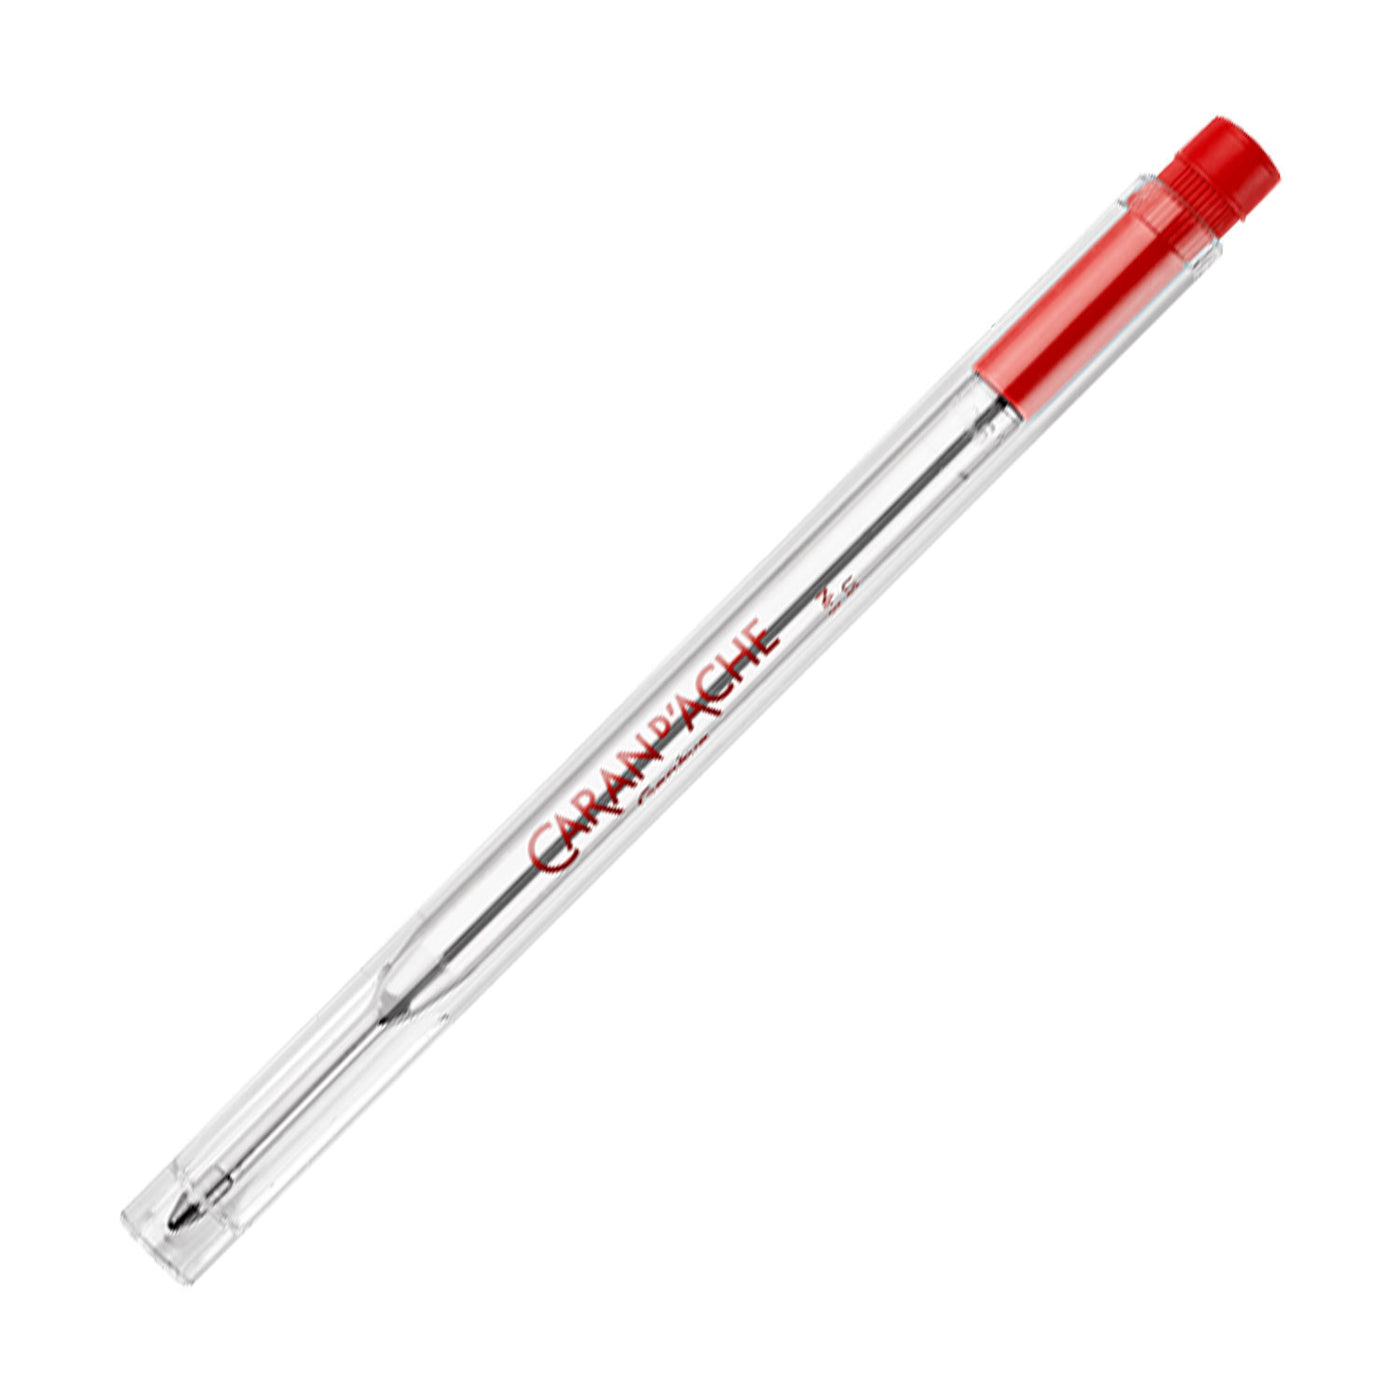 Caran d'Ache 8420.000 Goliath Ball Pen Medium Refill - Red 1